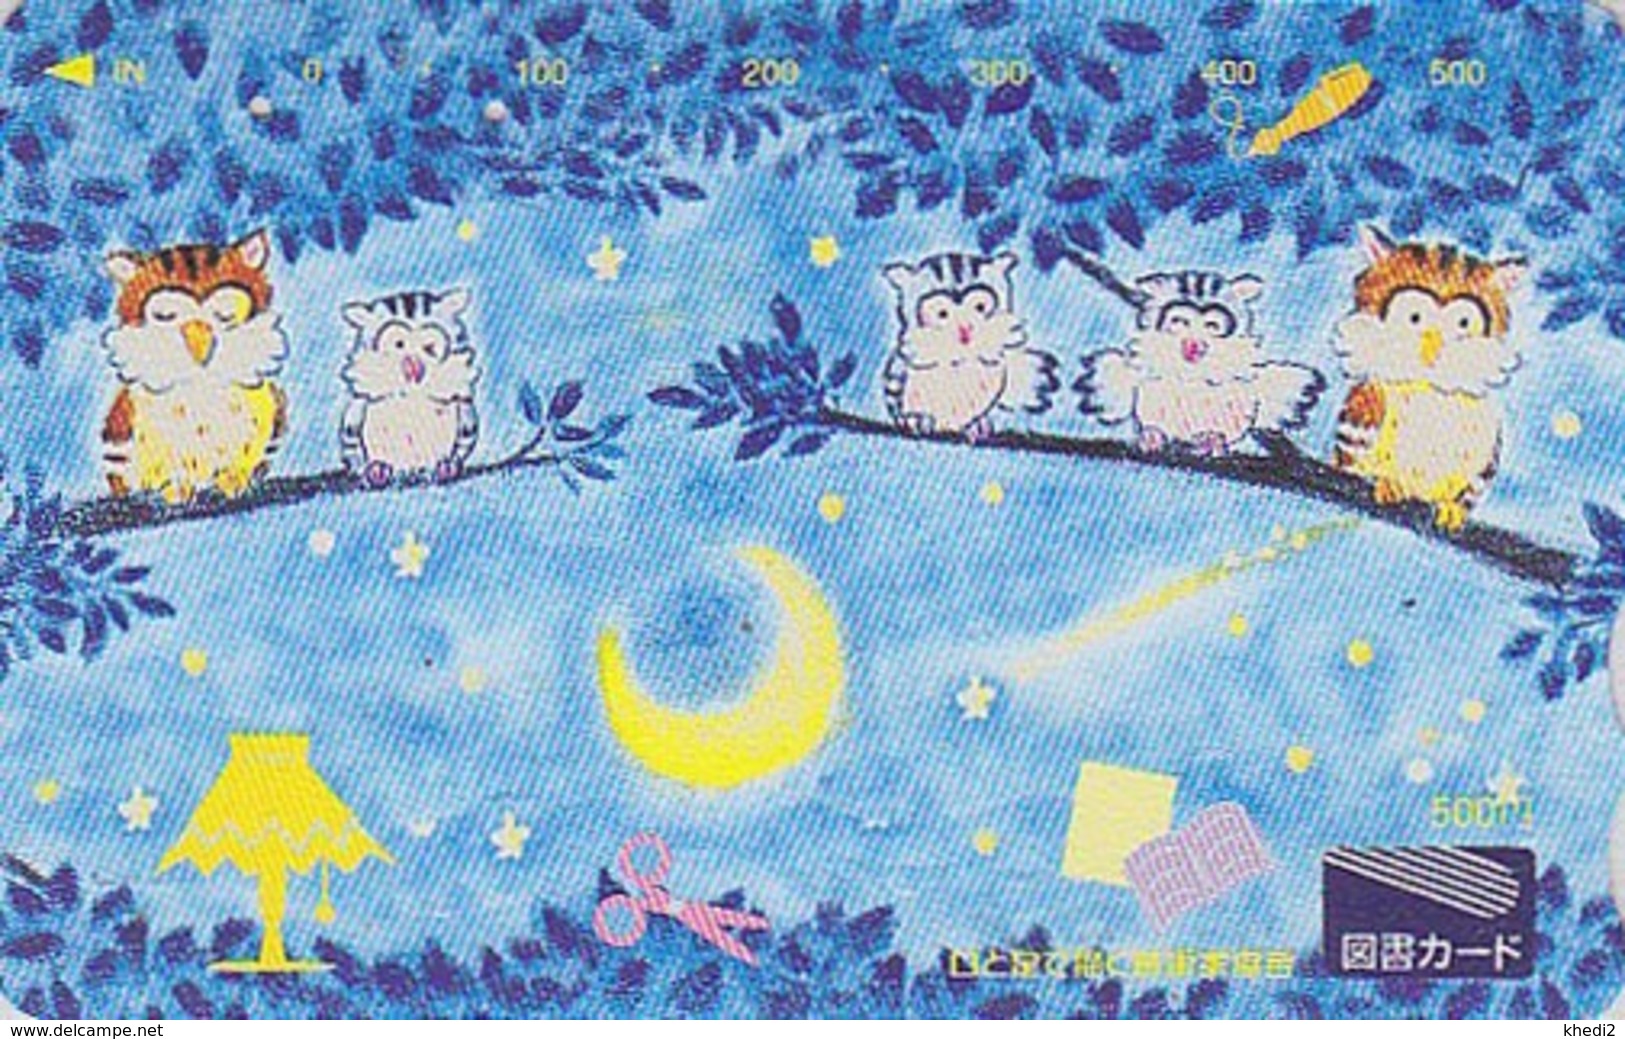 Carte Prépayée Japon - ANIMAL - OISEAU - HIBOU Chouette & Lune - OWL BIRD & Moon - Japan Prepaid Tosho Card - 4301 - Hiboux & Chouettes